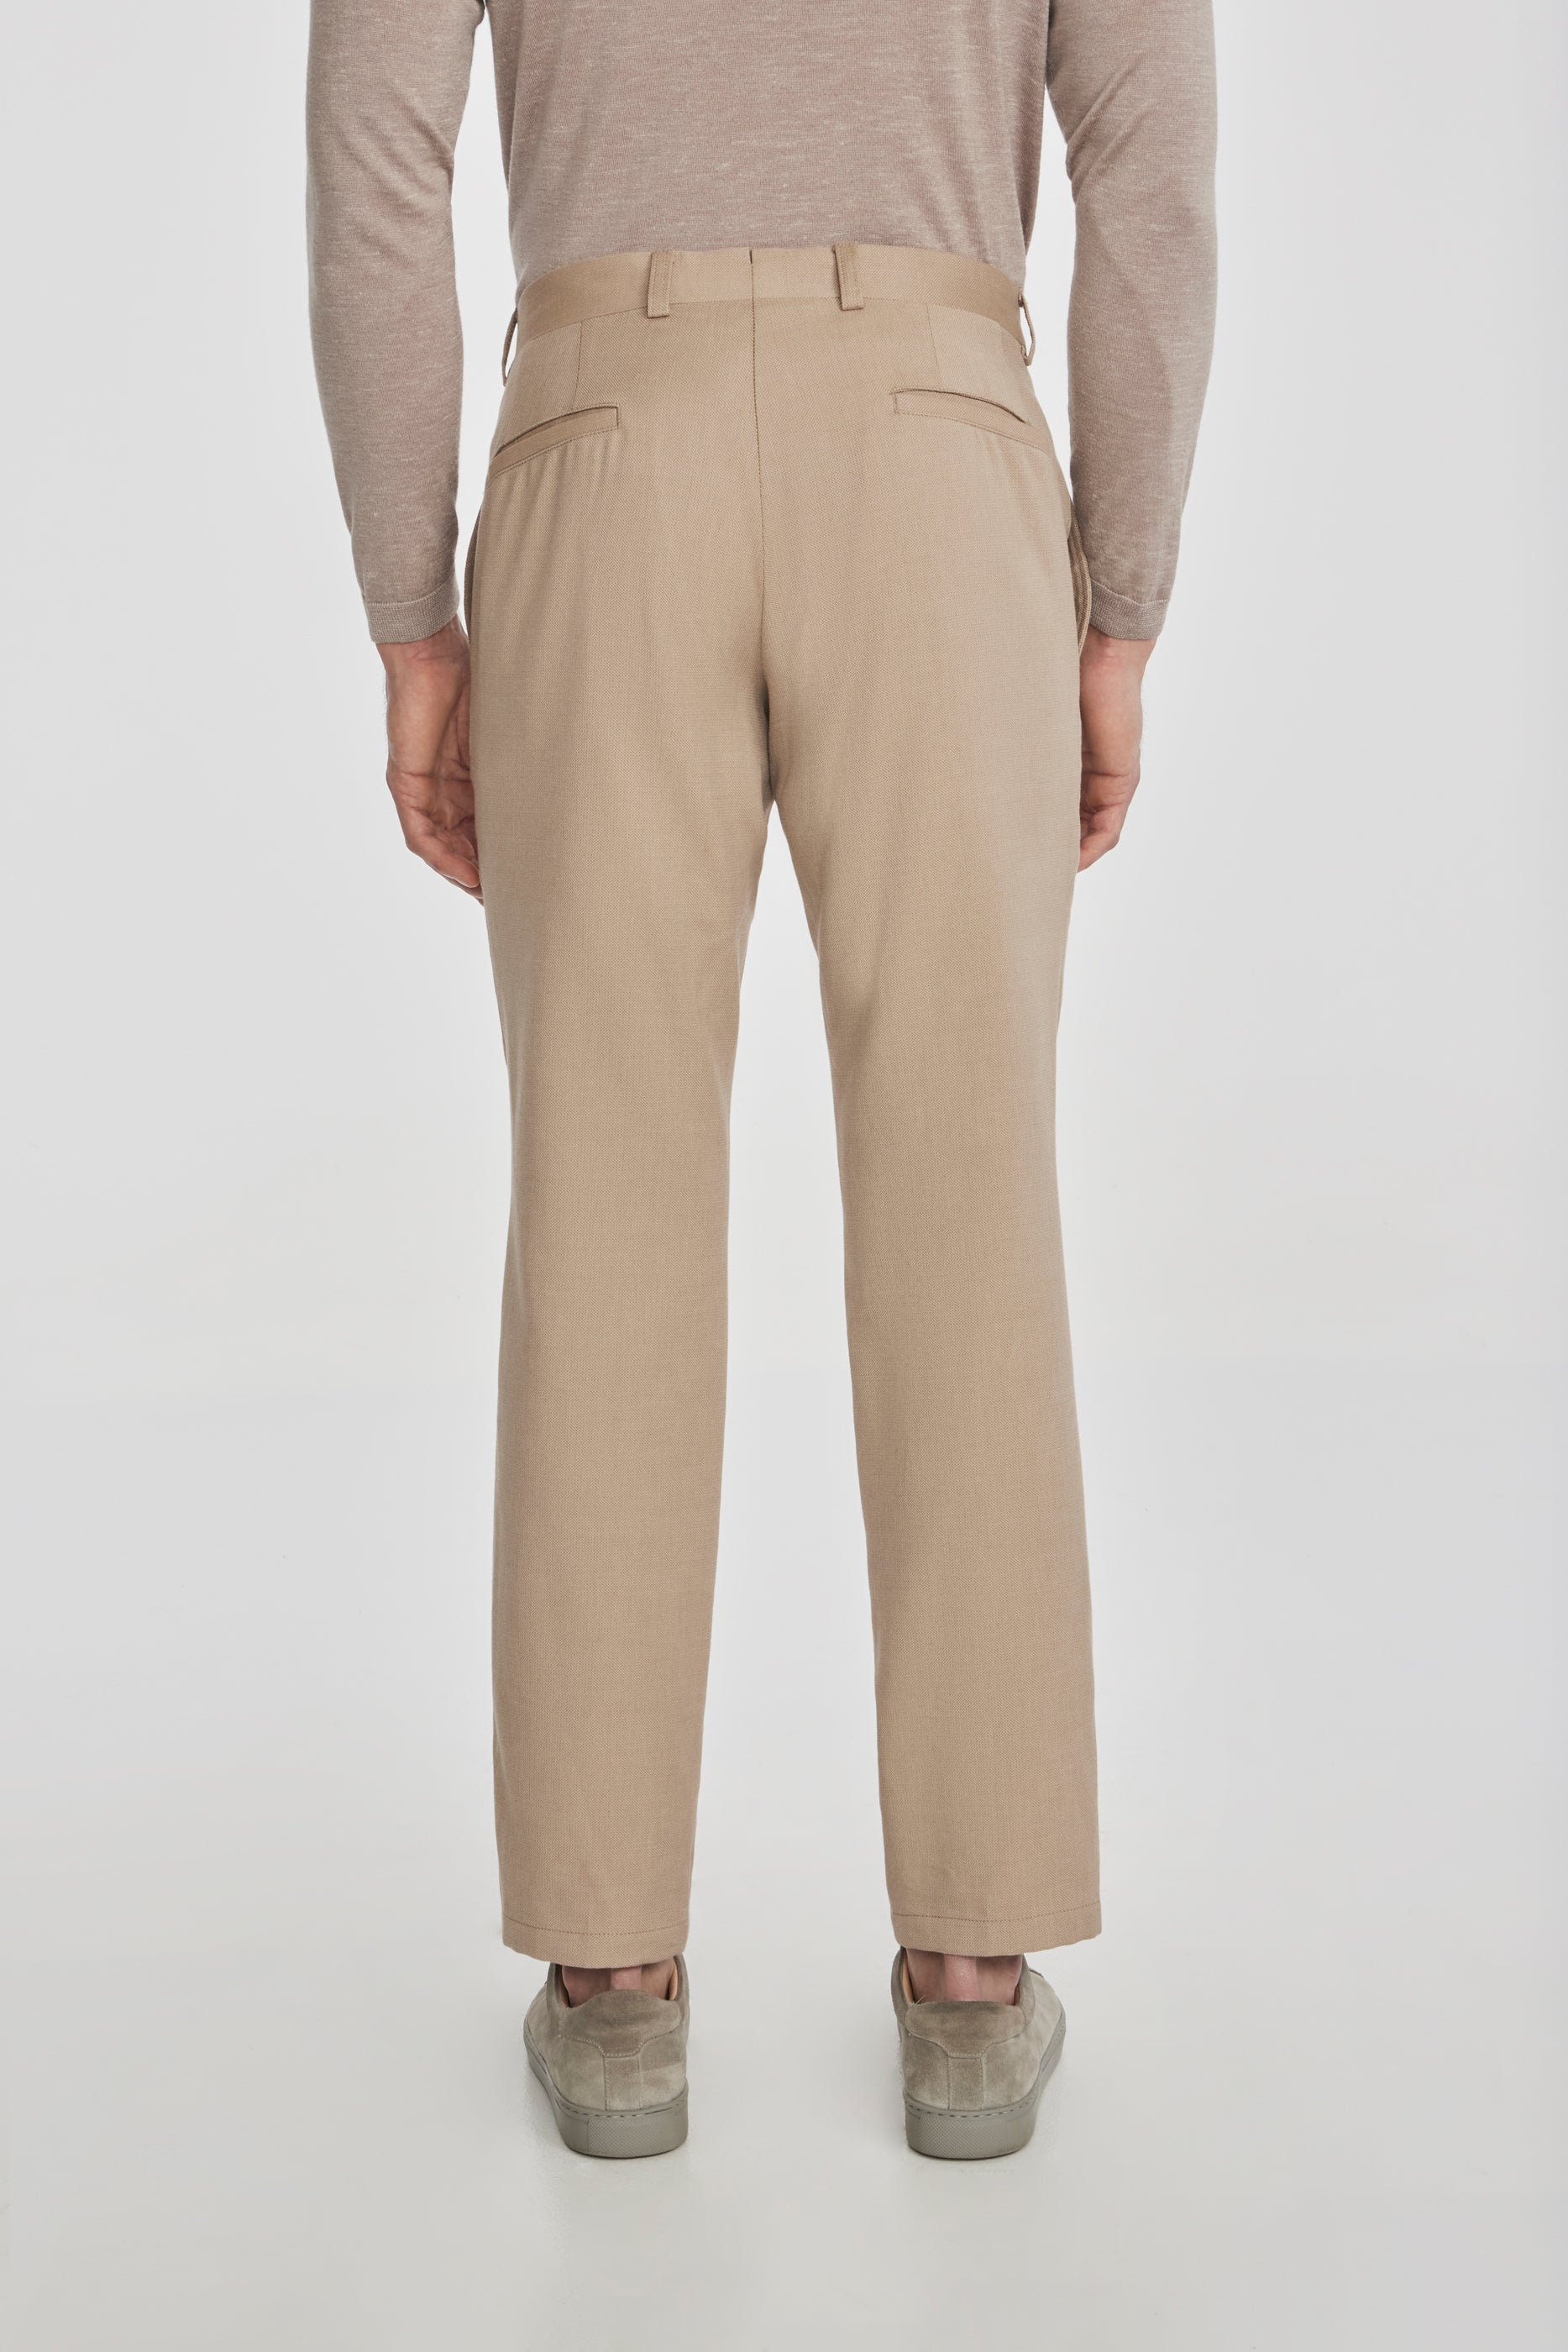 Vue alternative 3 Palmer pantalon en coton texturé et laine extensible, beige